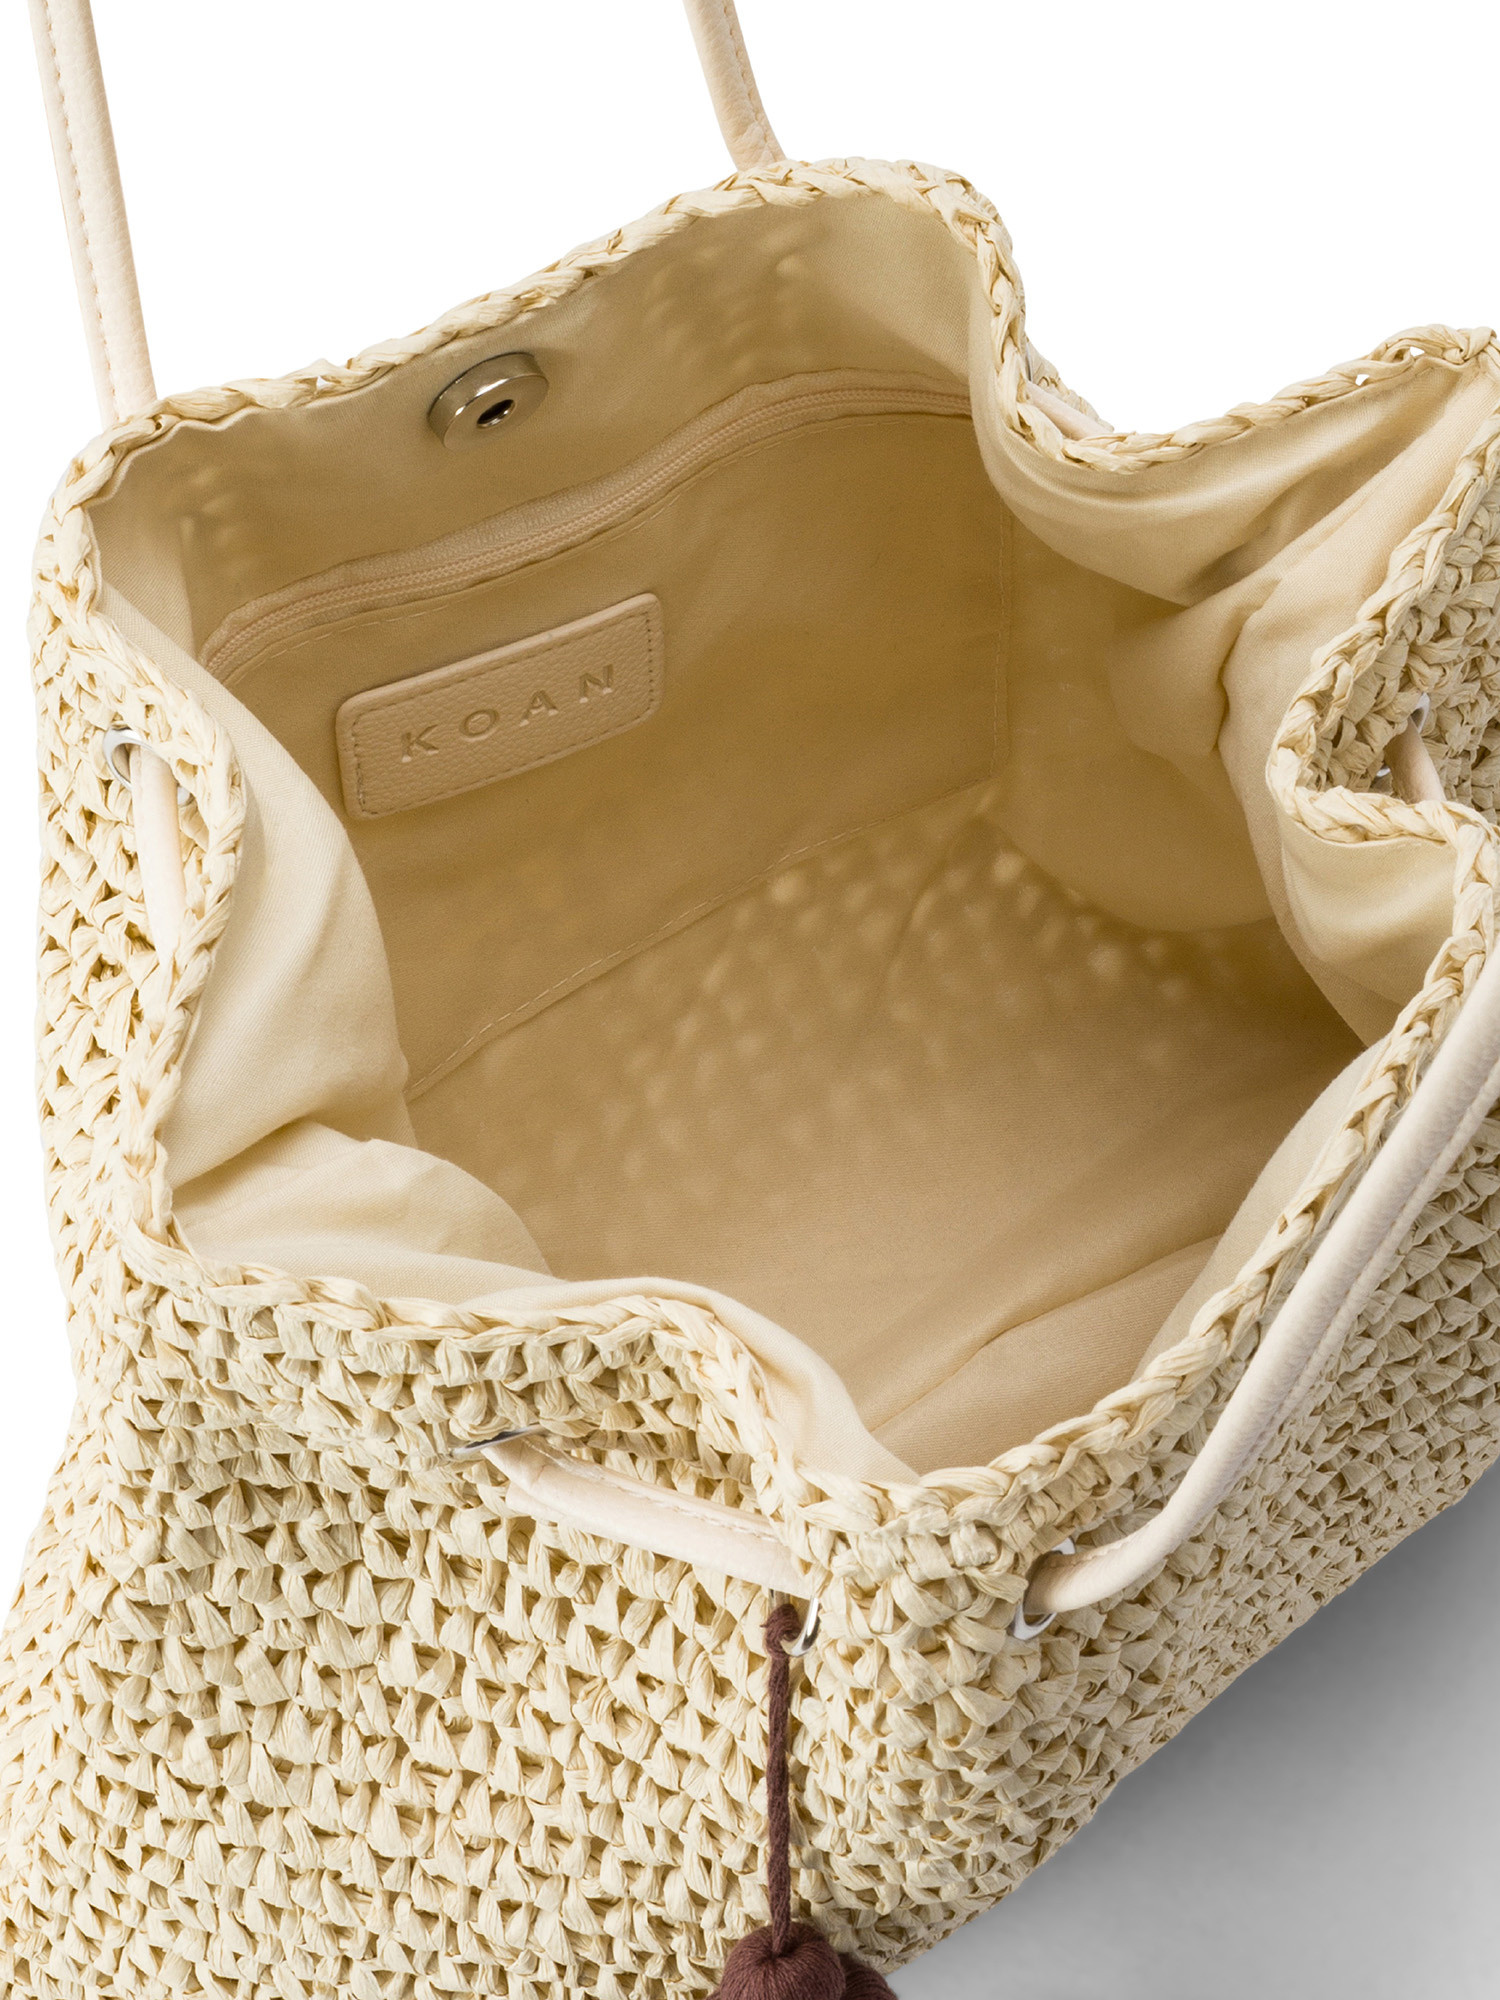 Koan - Straw shoulder bag, Natural, large image number 2